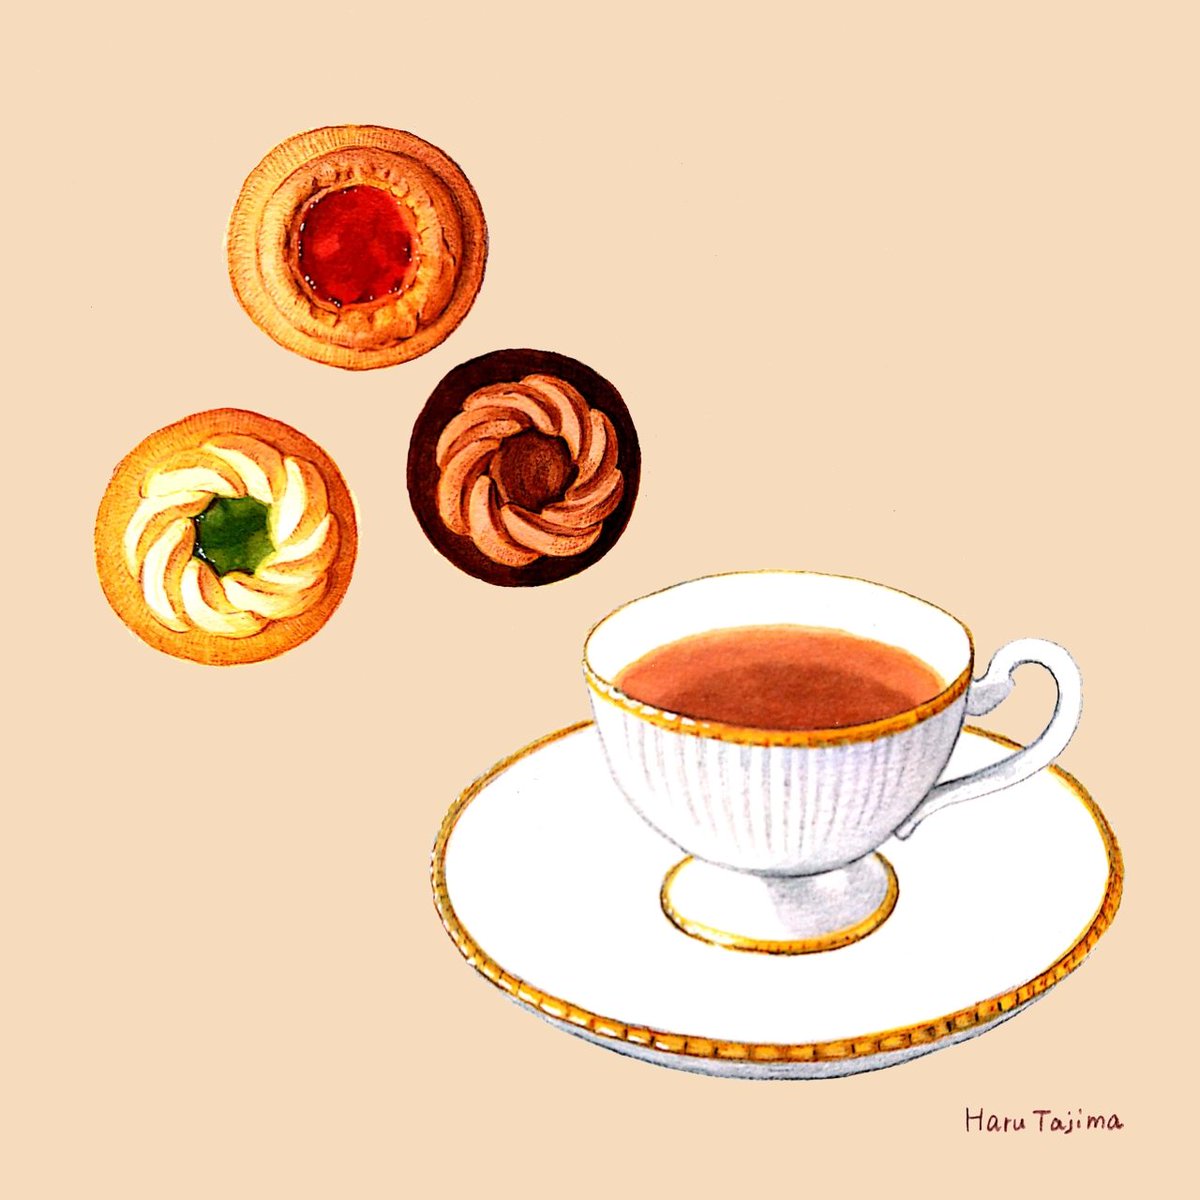 「今日は #紅茶の日 昨日は日本茶の日だったので明日は珈琲の日でお茶3DAYSかと」|田島ハルのイラスト